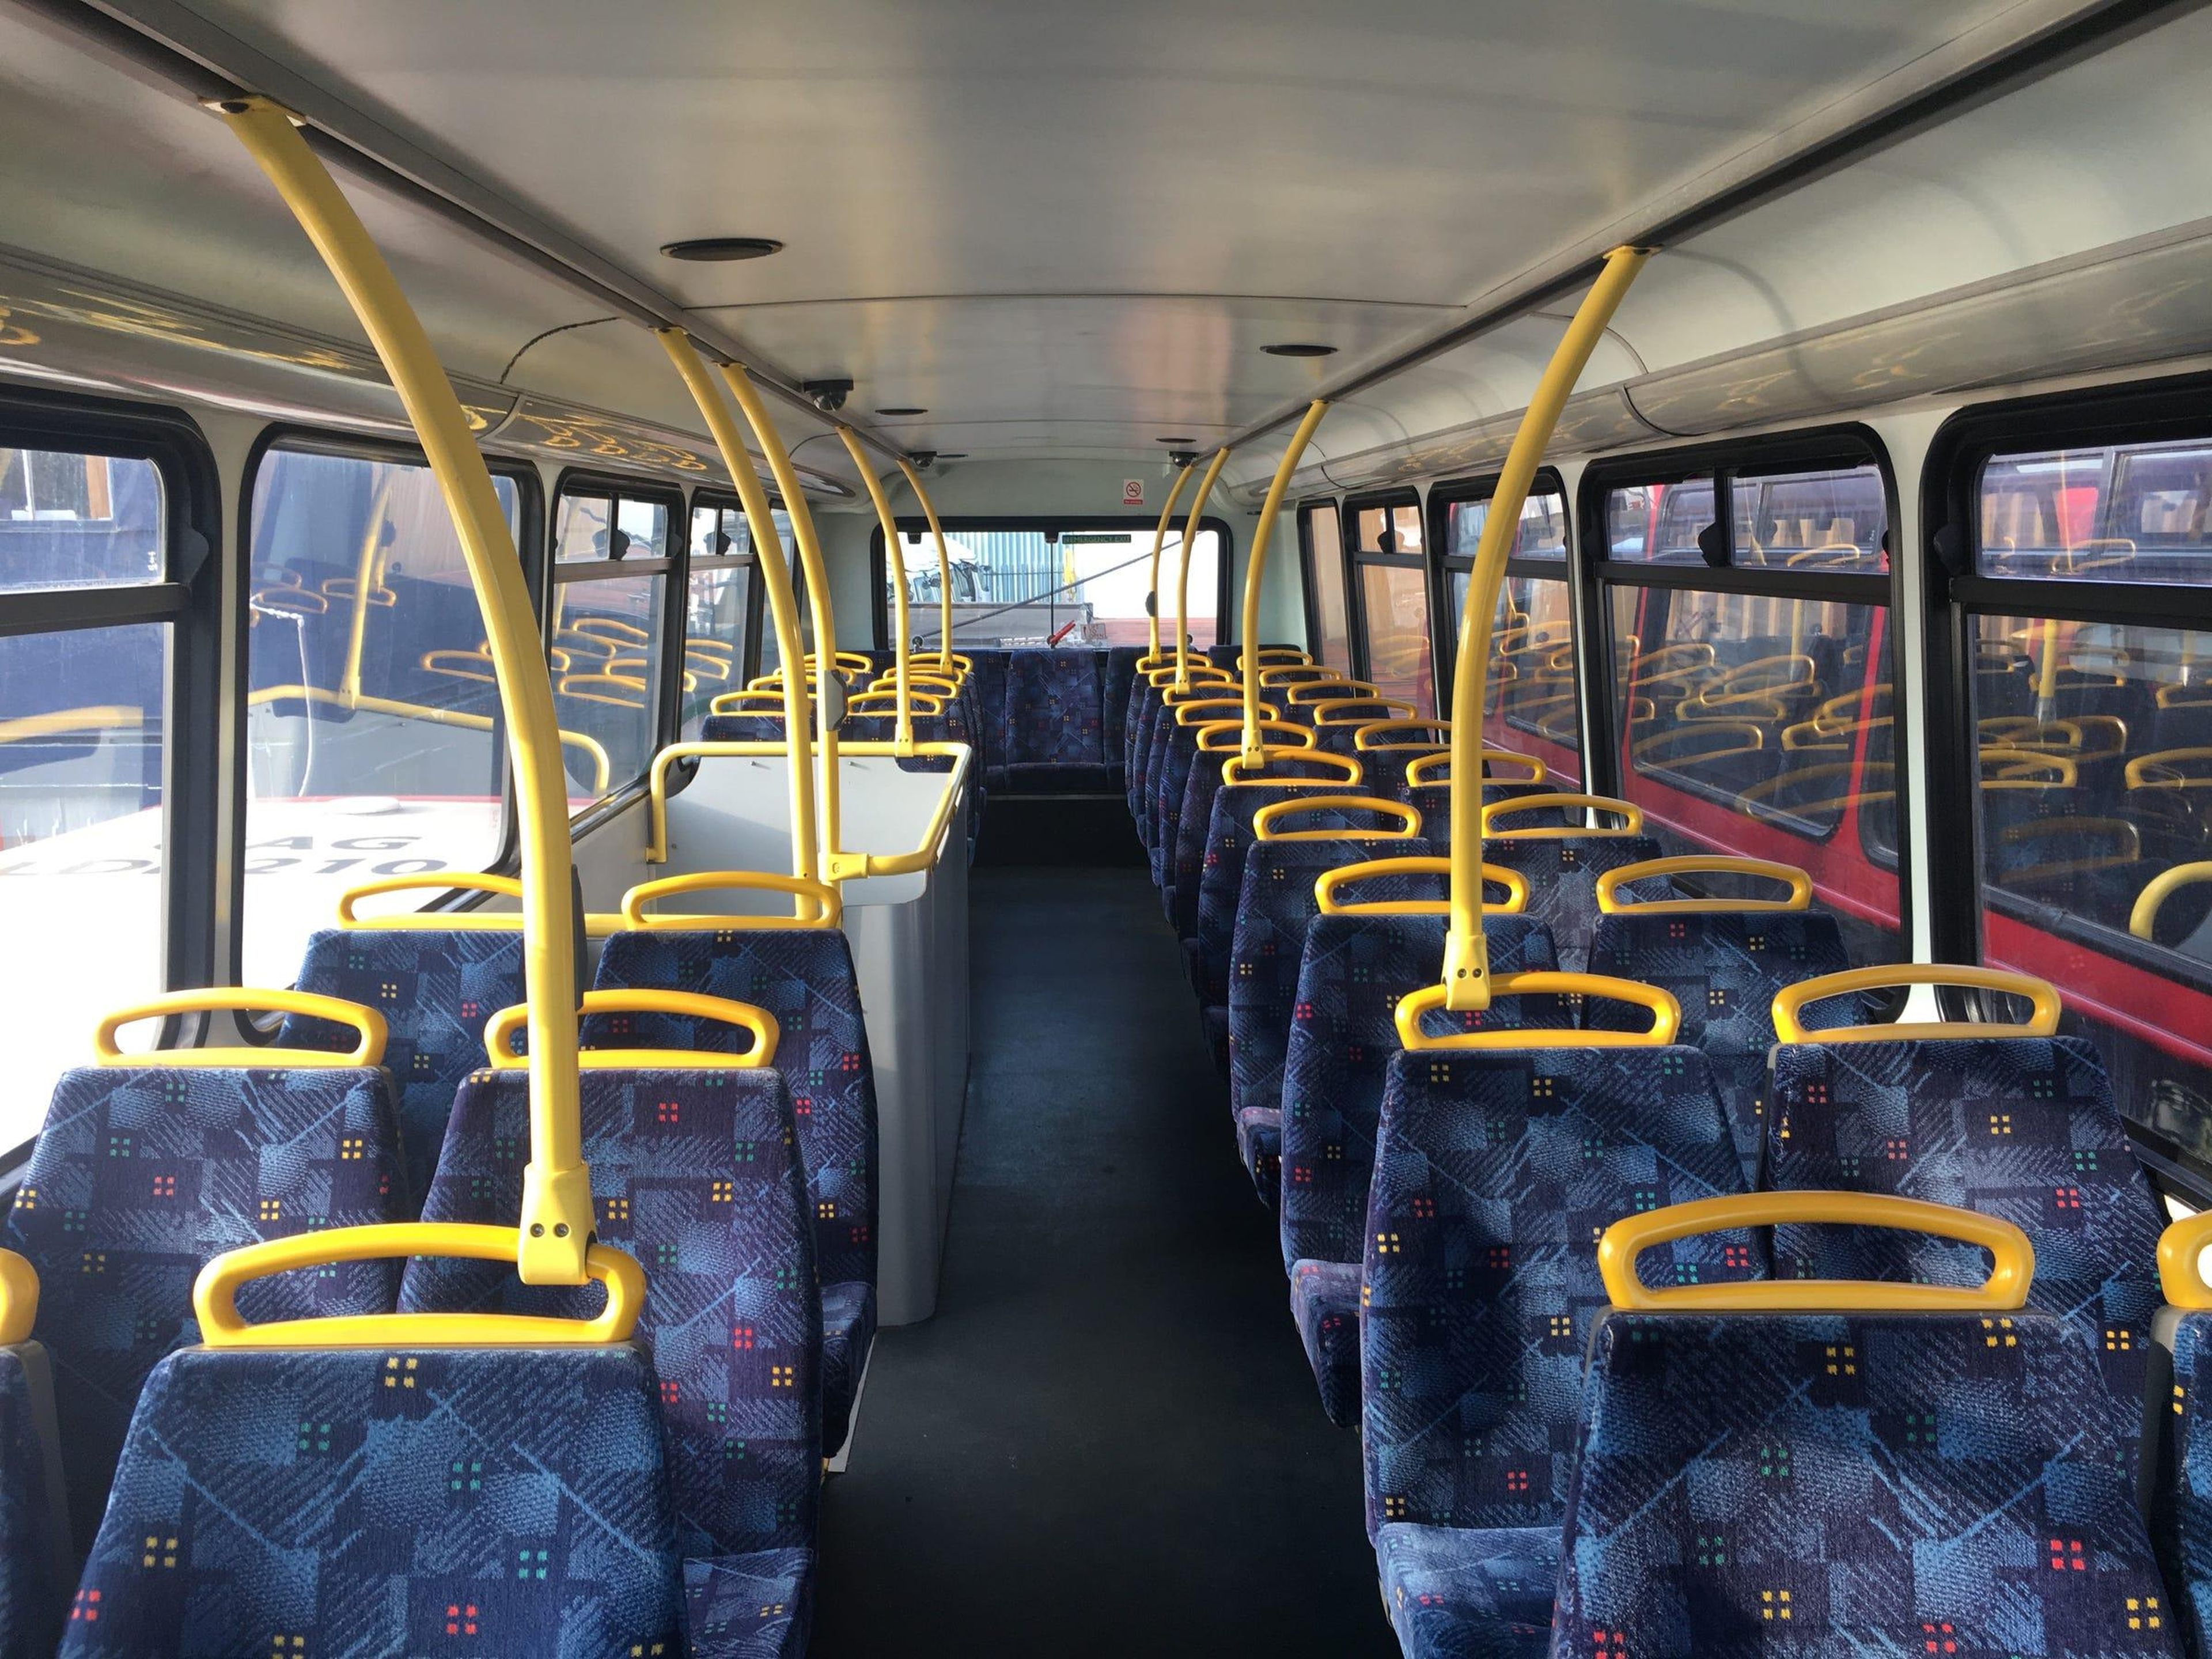 El autobús tenía todos los asientos cuando lo compraron.